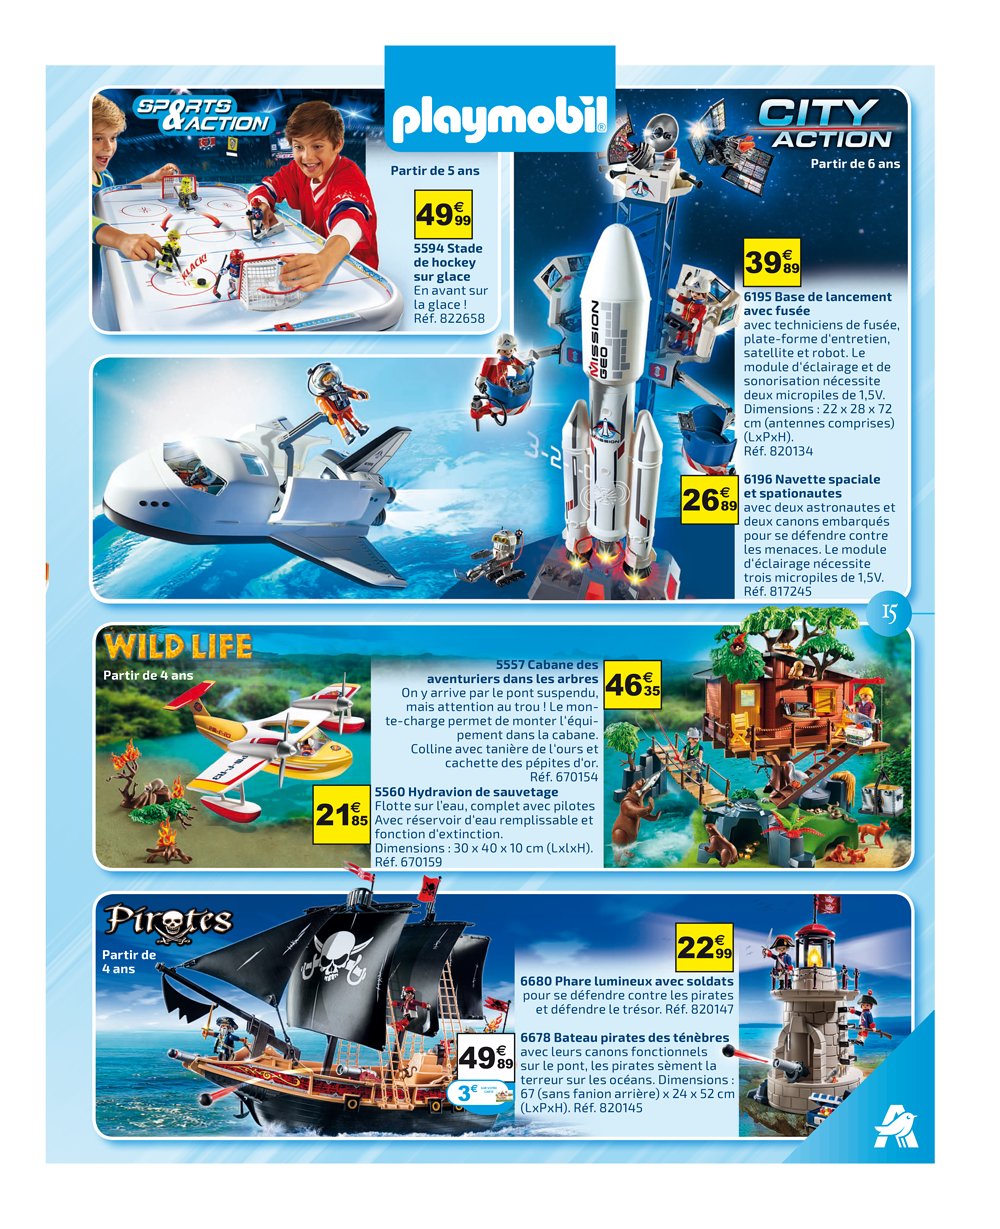 Playmobil City Action 6195 pas cher, Base de lancement avec fusée